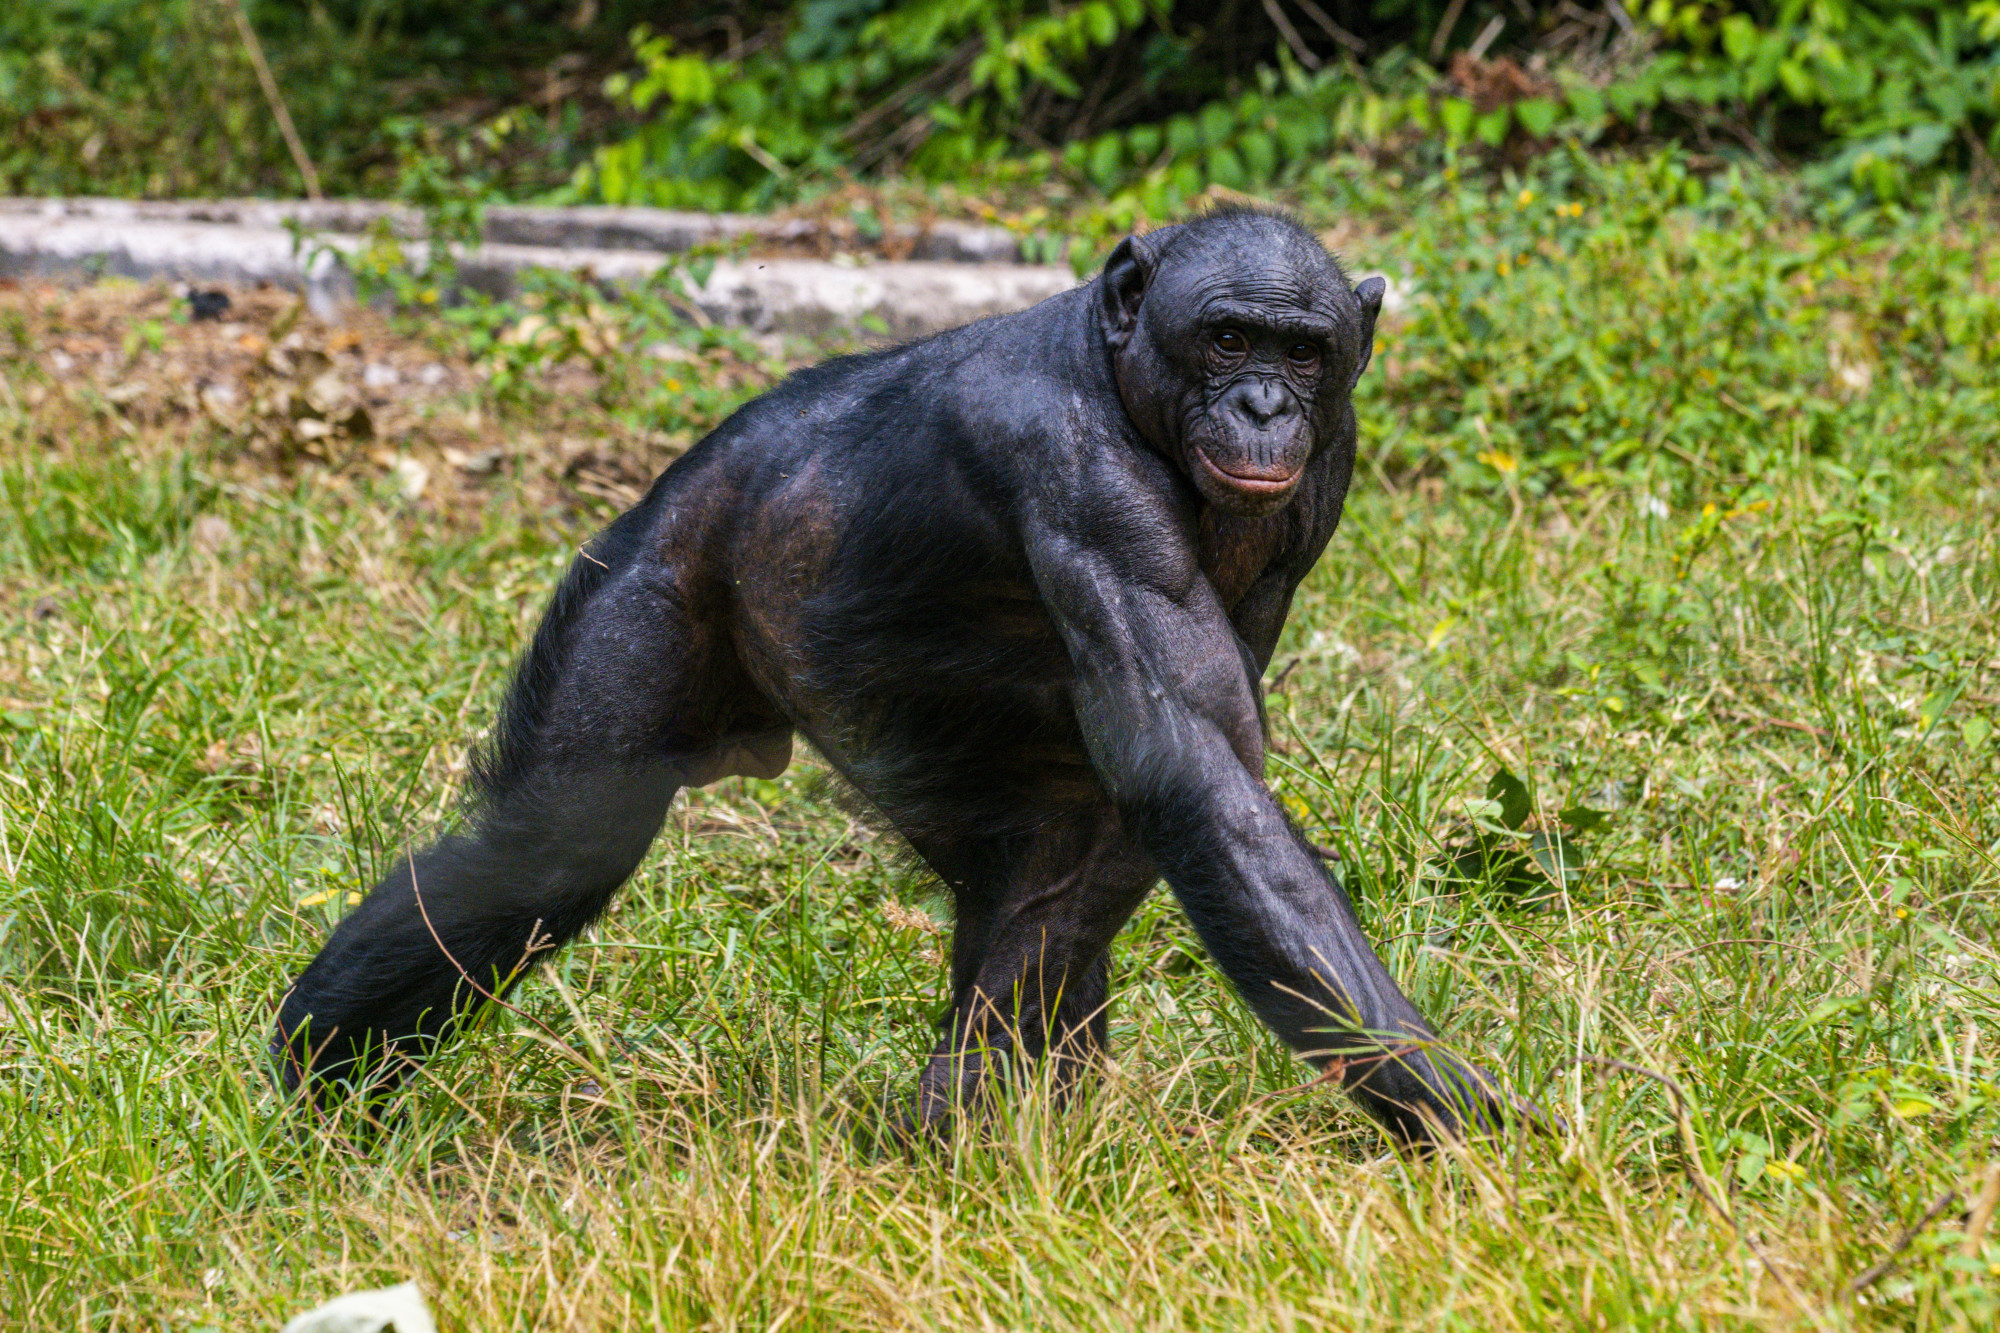 Az állatvilág békés szexterapeutáinak tartott bonobók hímjei a brutális csimpánzoknál is gyakrabban erőszakoskodnak